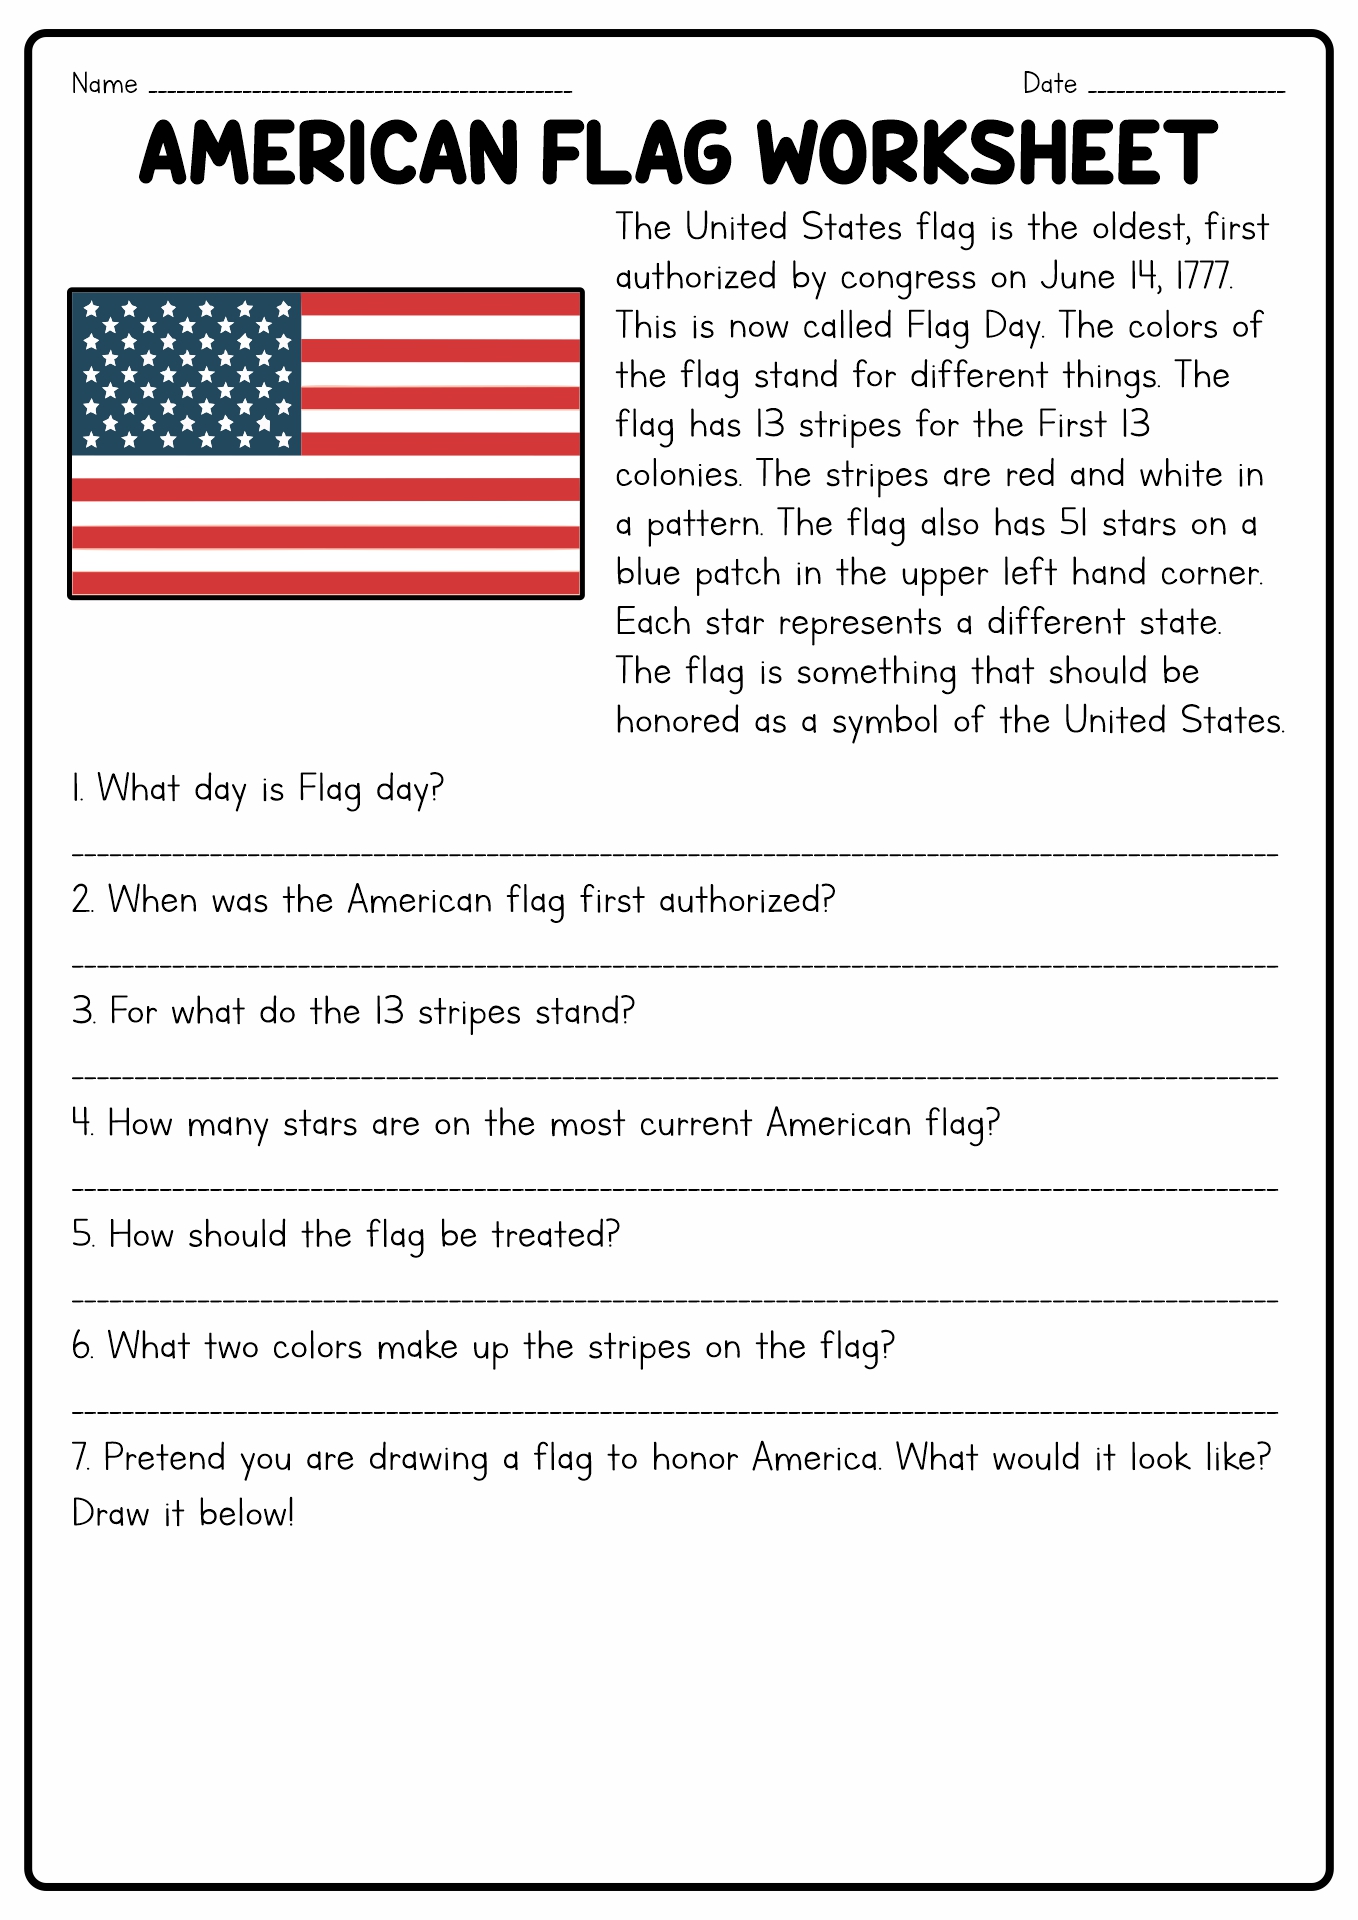 American Flag Printable Worksheet Image